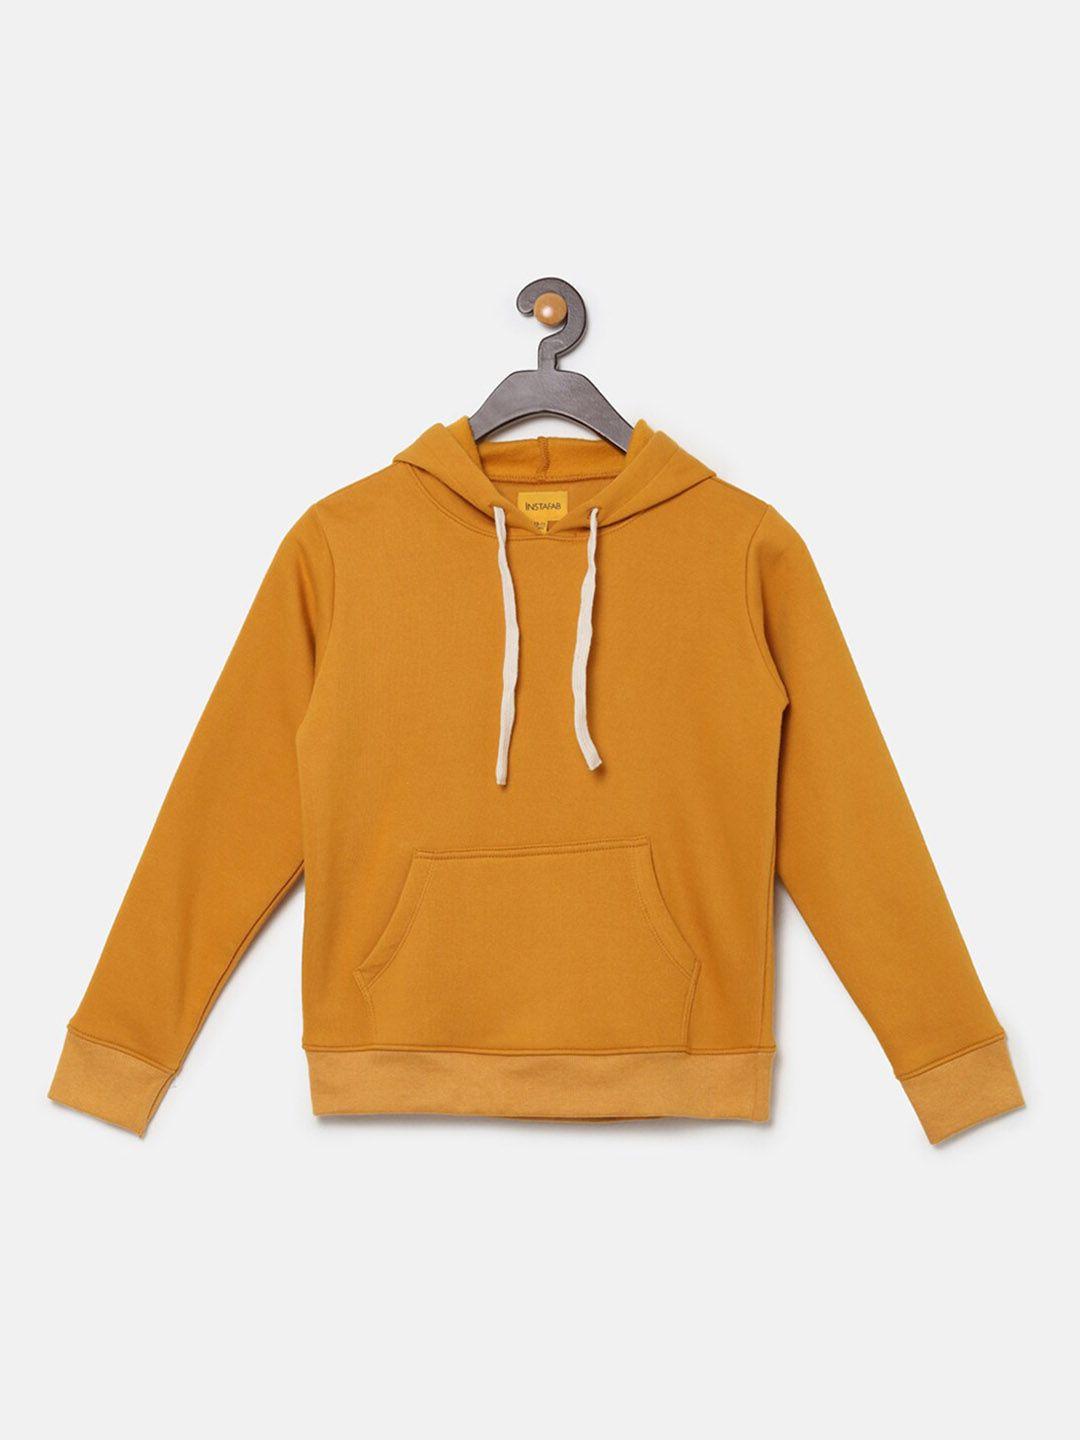 instafab boys mustard hooded sweatshirt